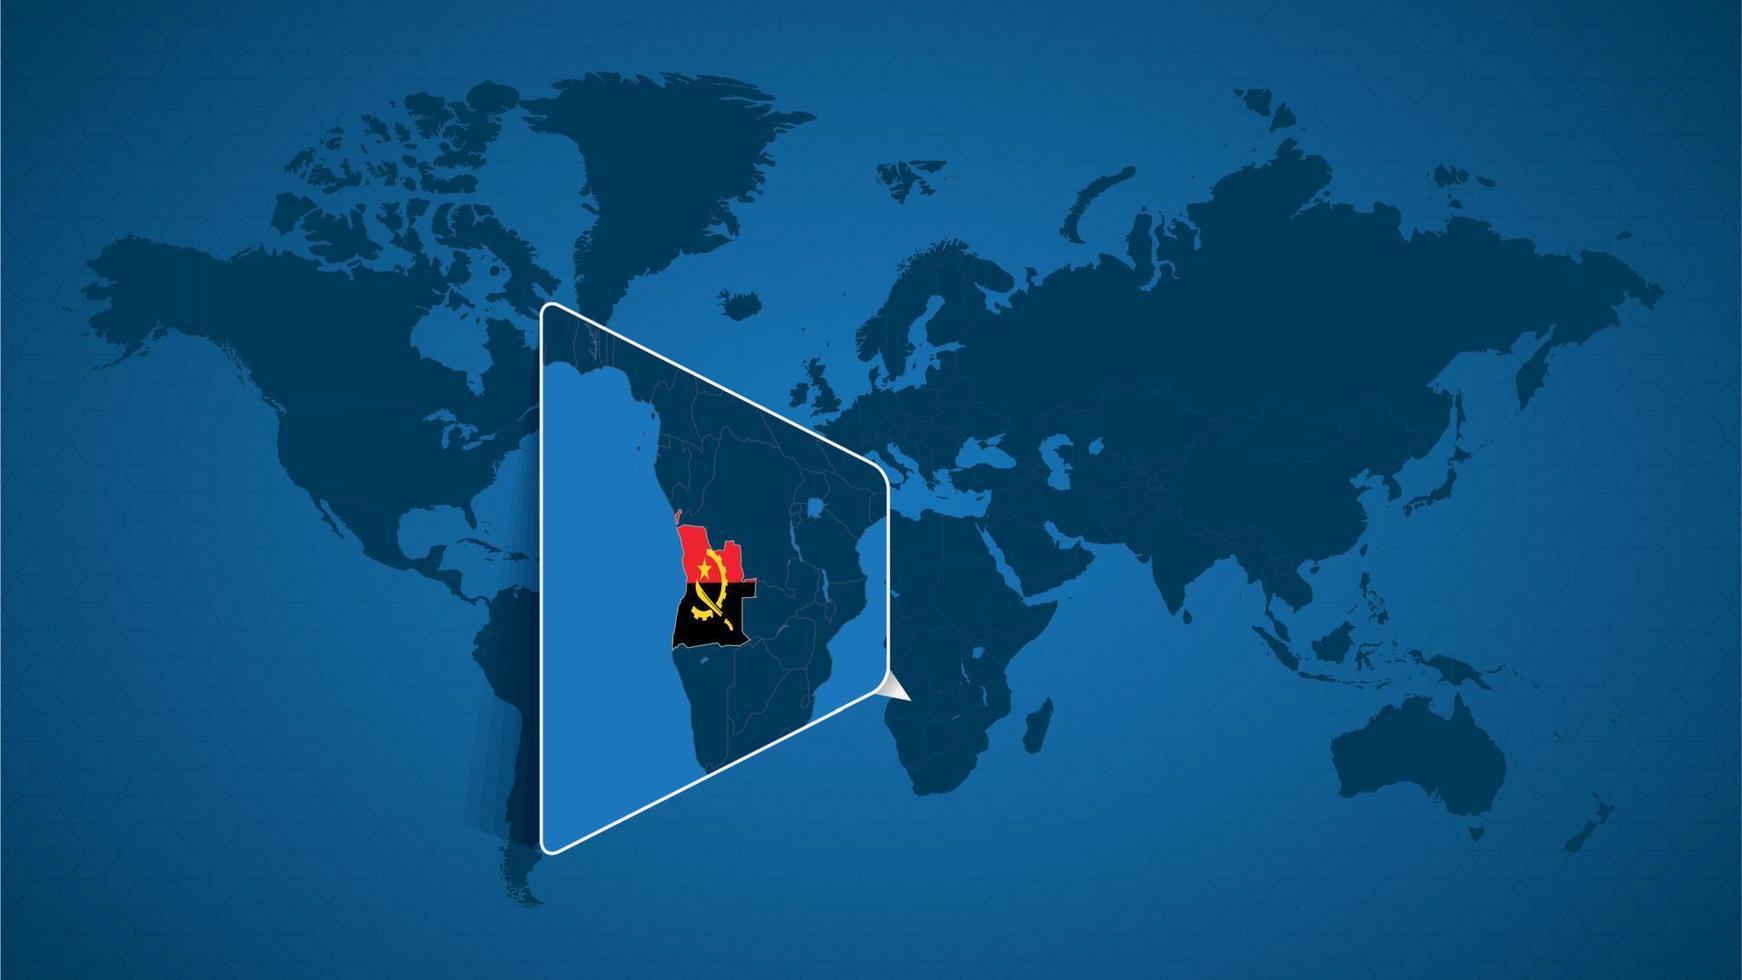 mapa-múndi detalhado com mapa ampliado fixado de angola e países vizinhos. vetor